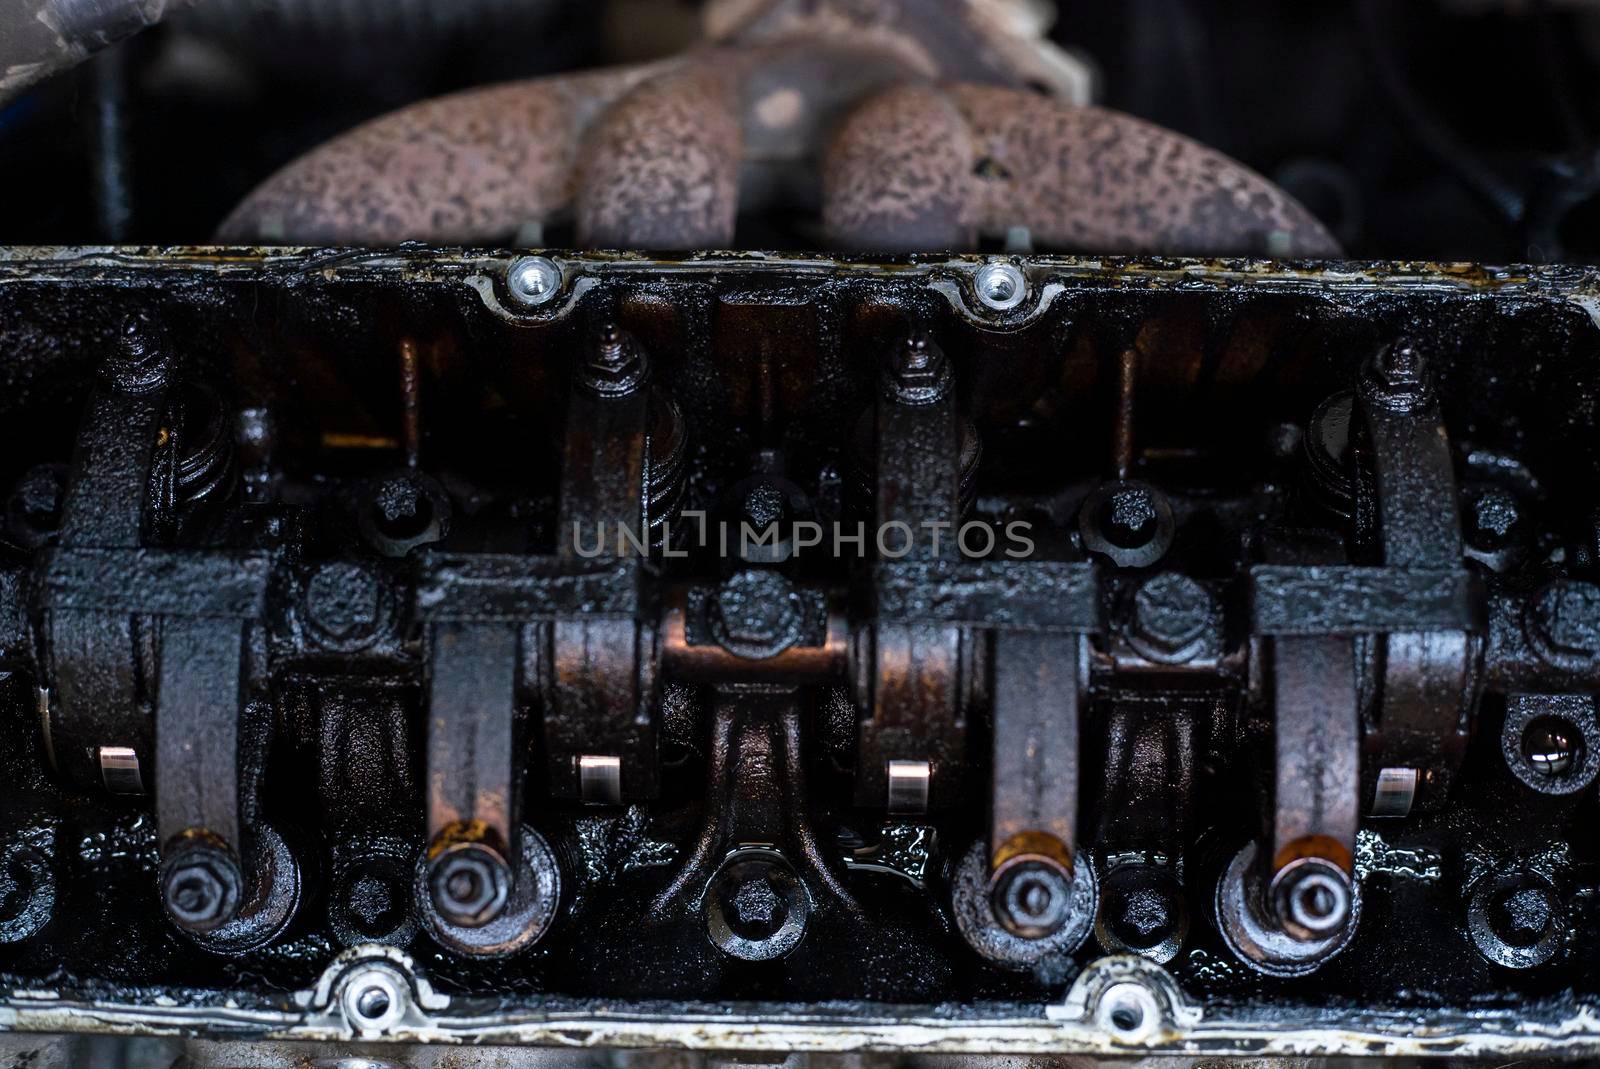 Dirty Valves and engine camshaft inside a broken engine